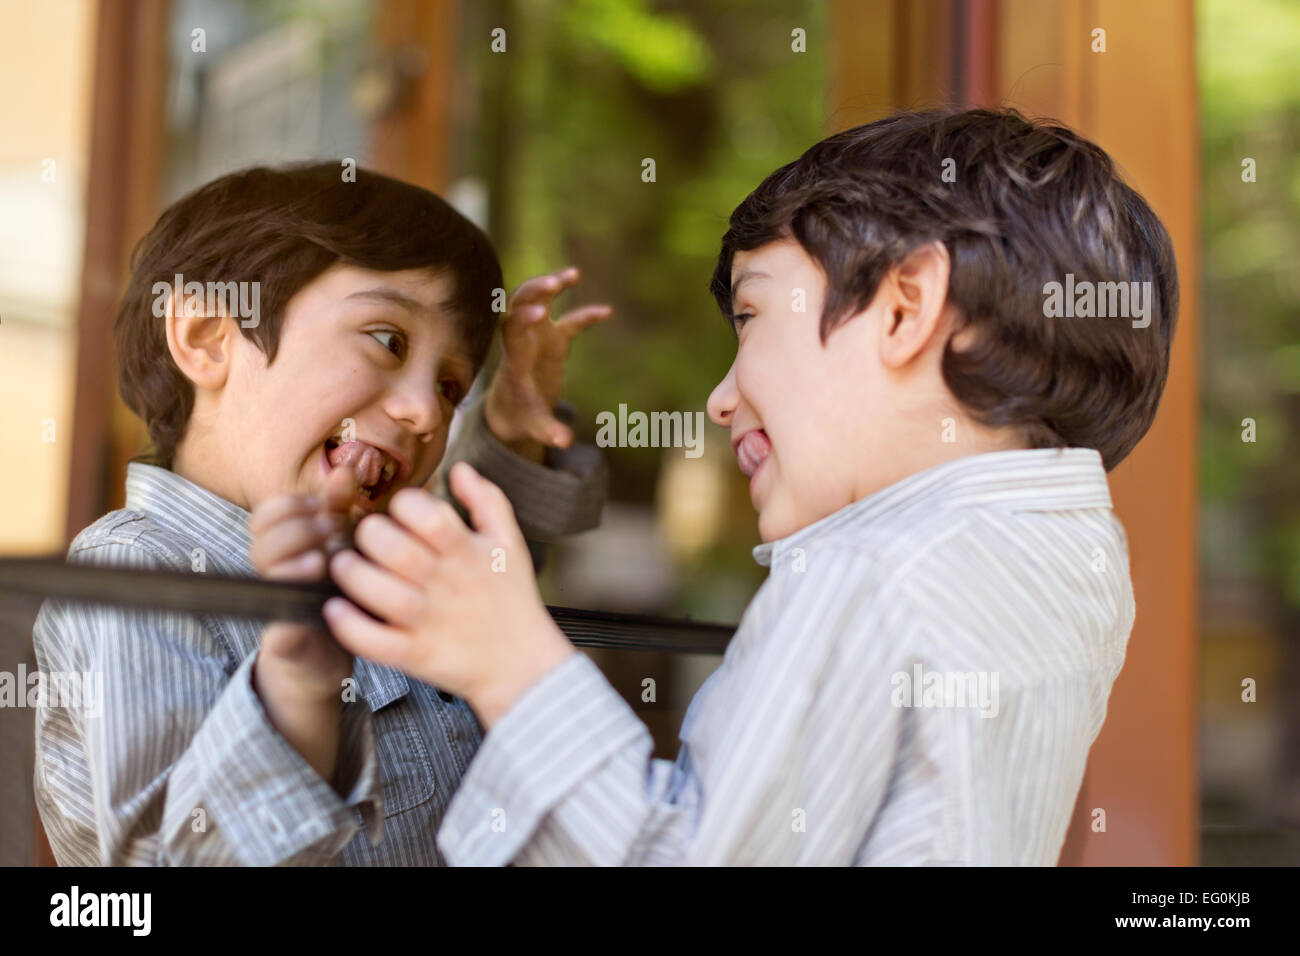 Jungen (4-5) ziehende Gesicht gegen Spiegel Fenster Stockfoto